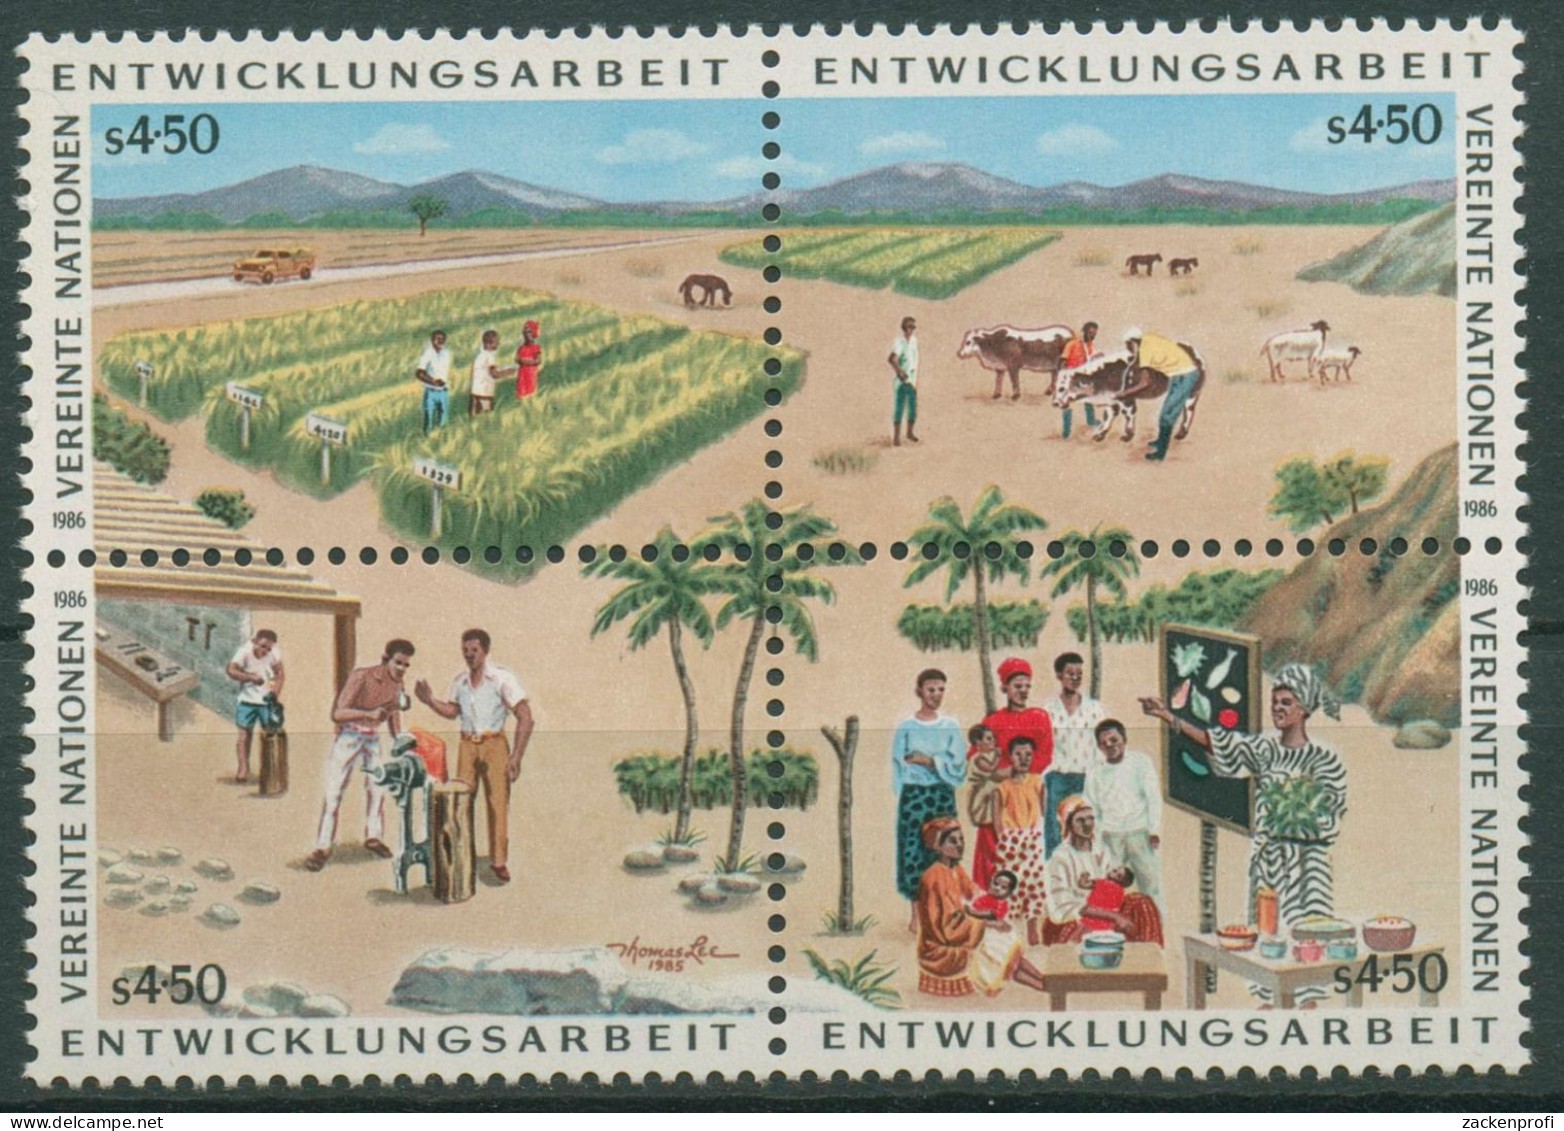 UNO Wien 1986 Entwicklungsprogramm Landwirtschaft 56/59 ZD Postfrisch - Unused Stamps